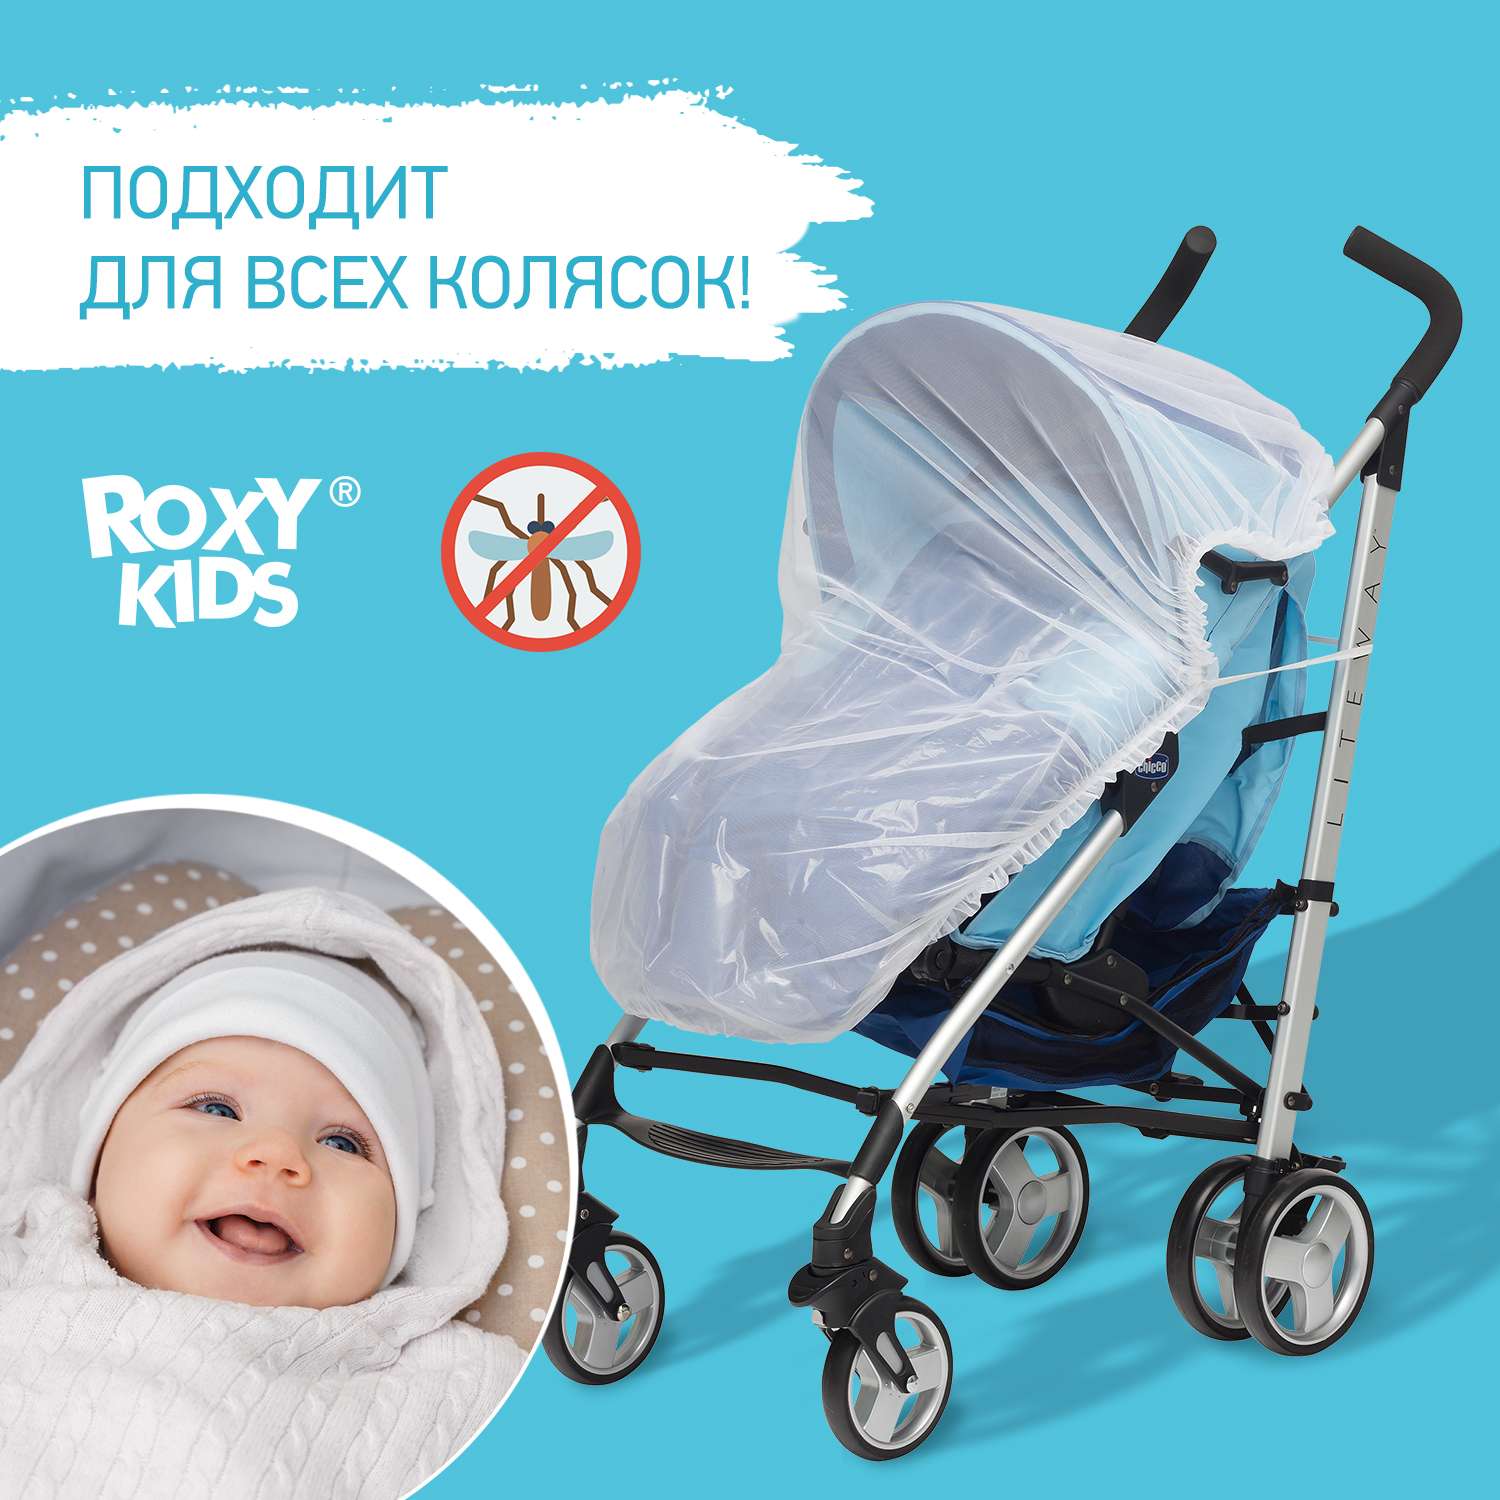 Сетка москитная ROXY-KIDS универсальная на детскую коляску RMN-001 - фото 1